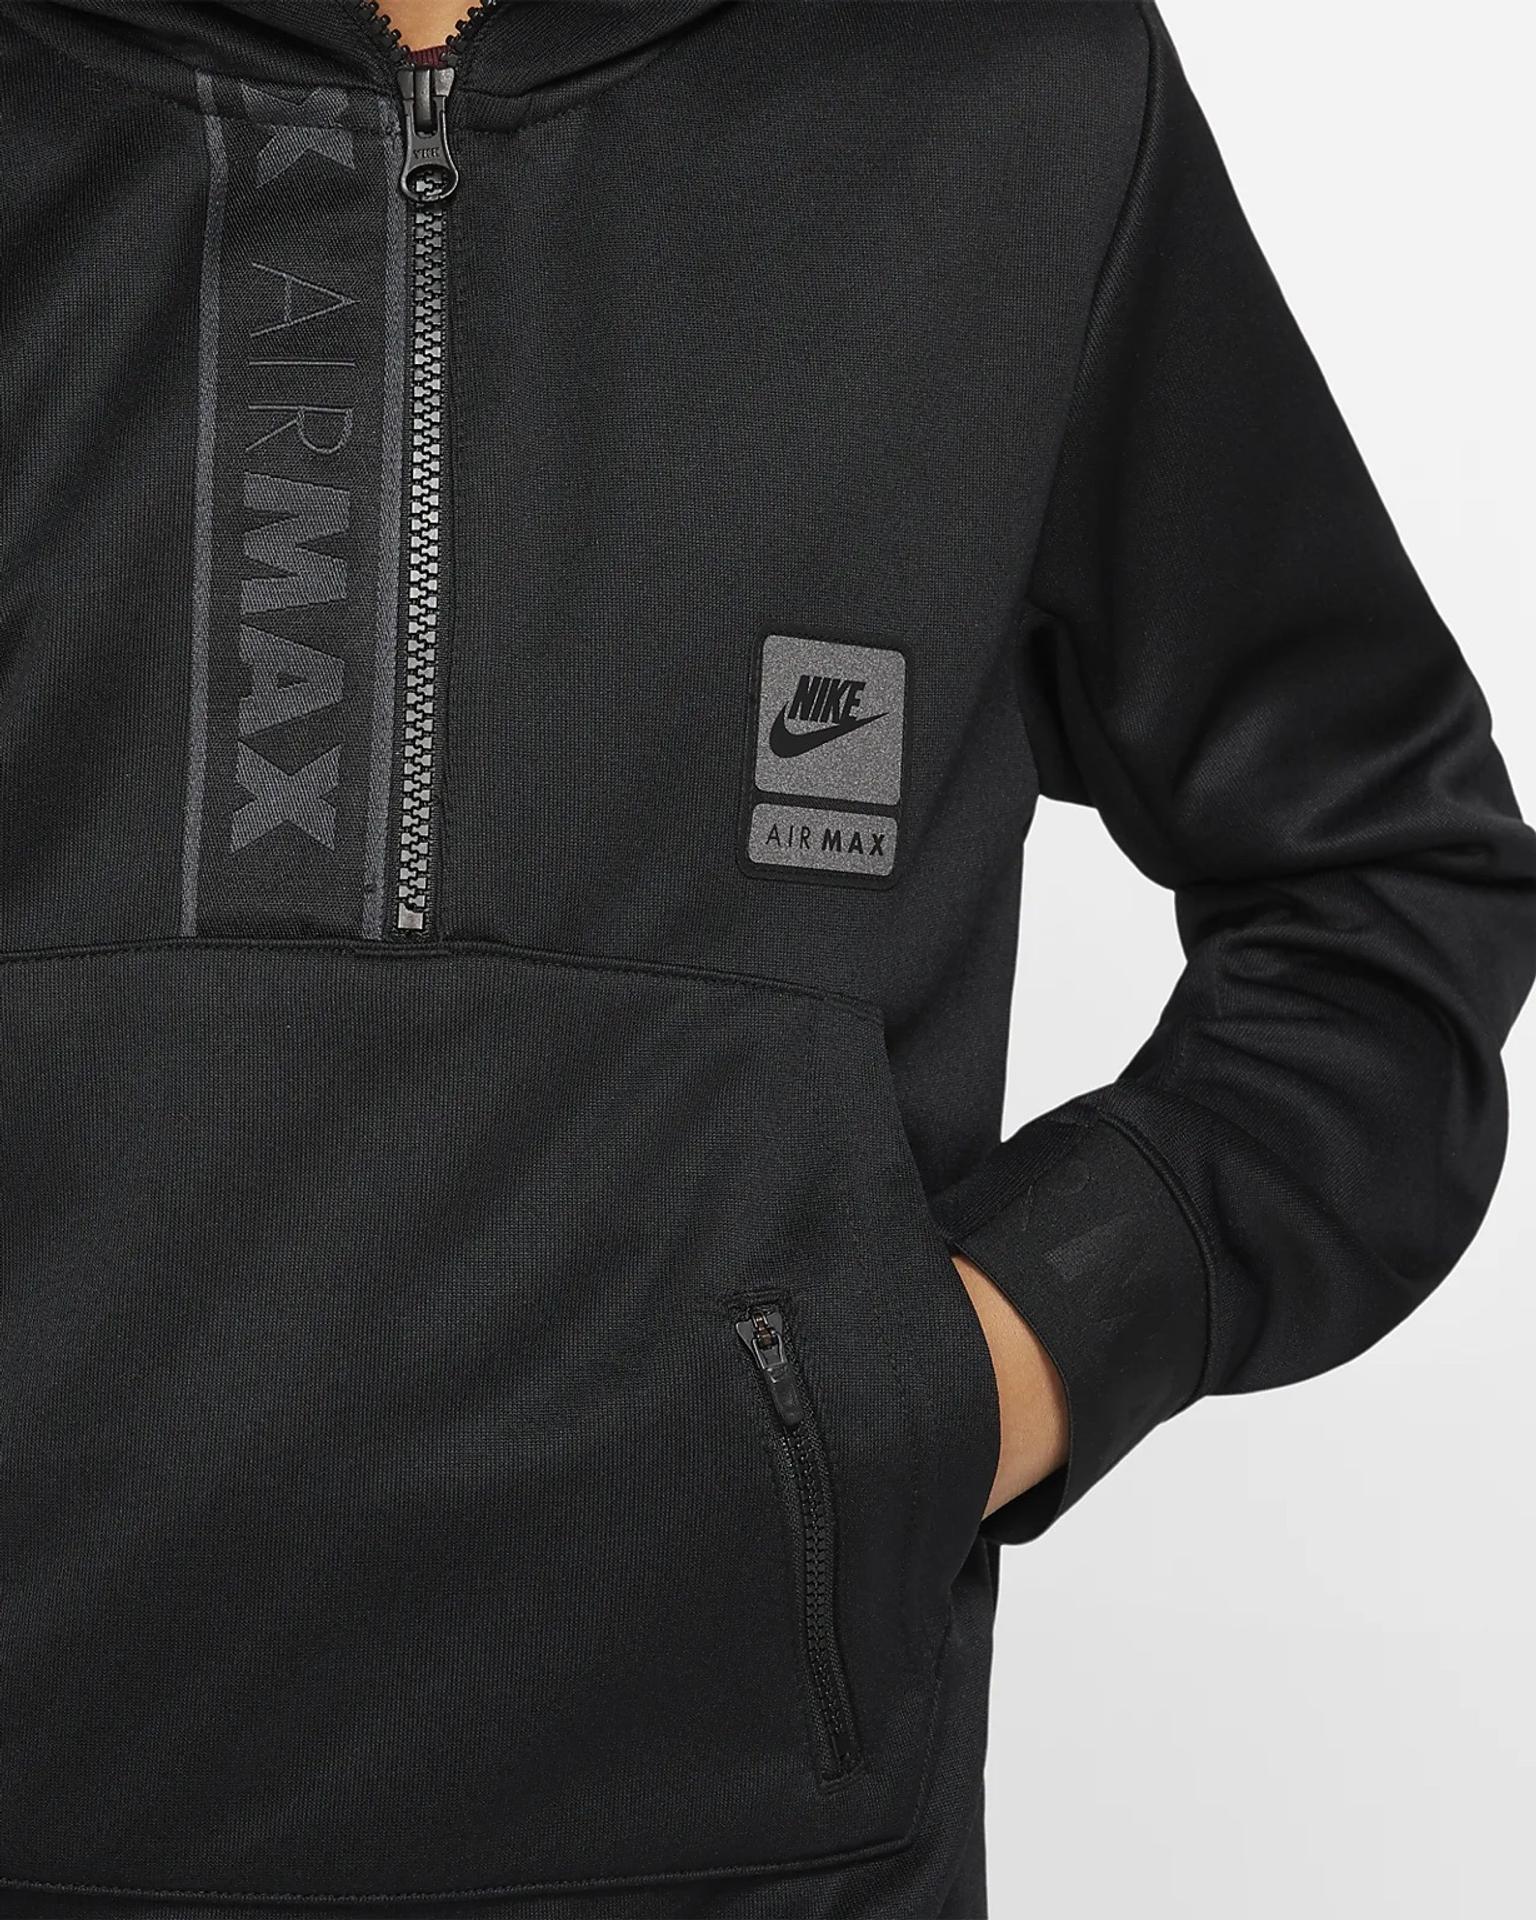 air max hoodie mens